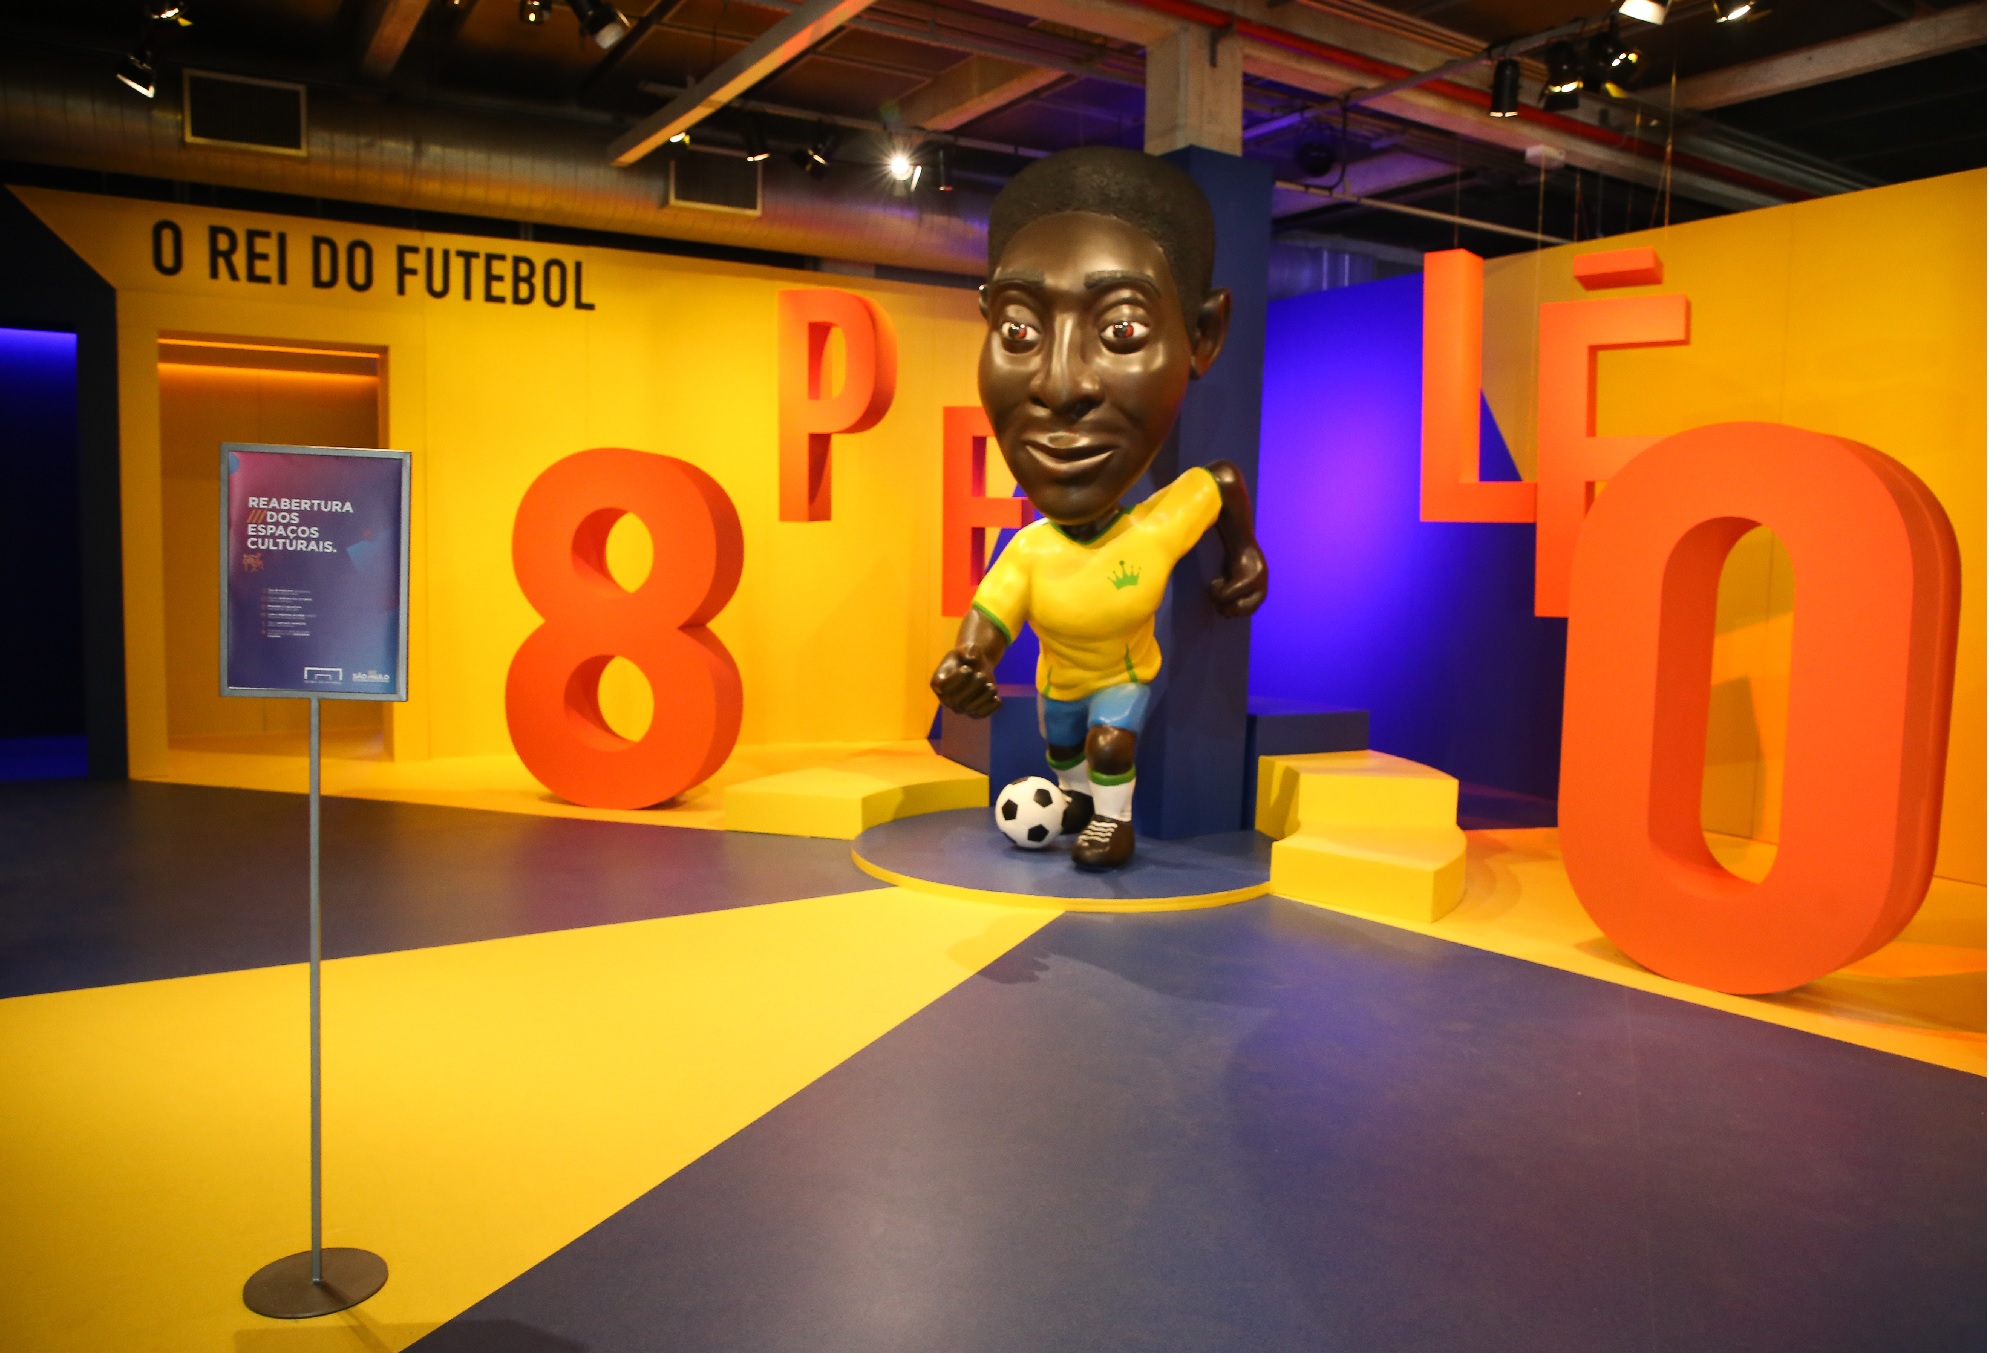 Futebol de papelão — Museu do Futebol